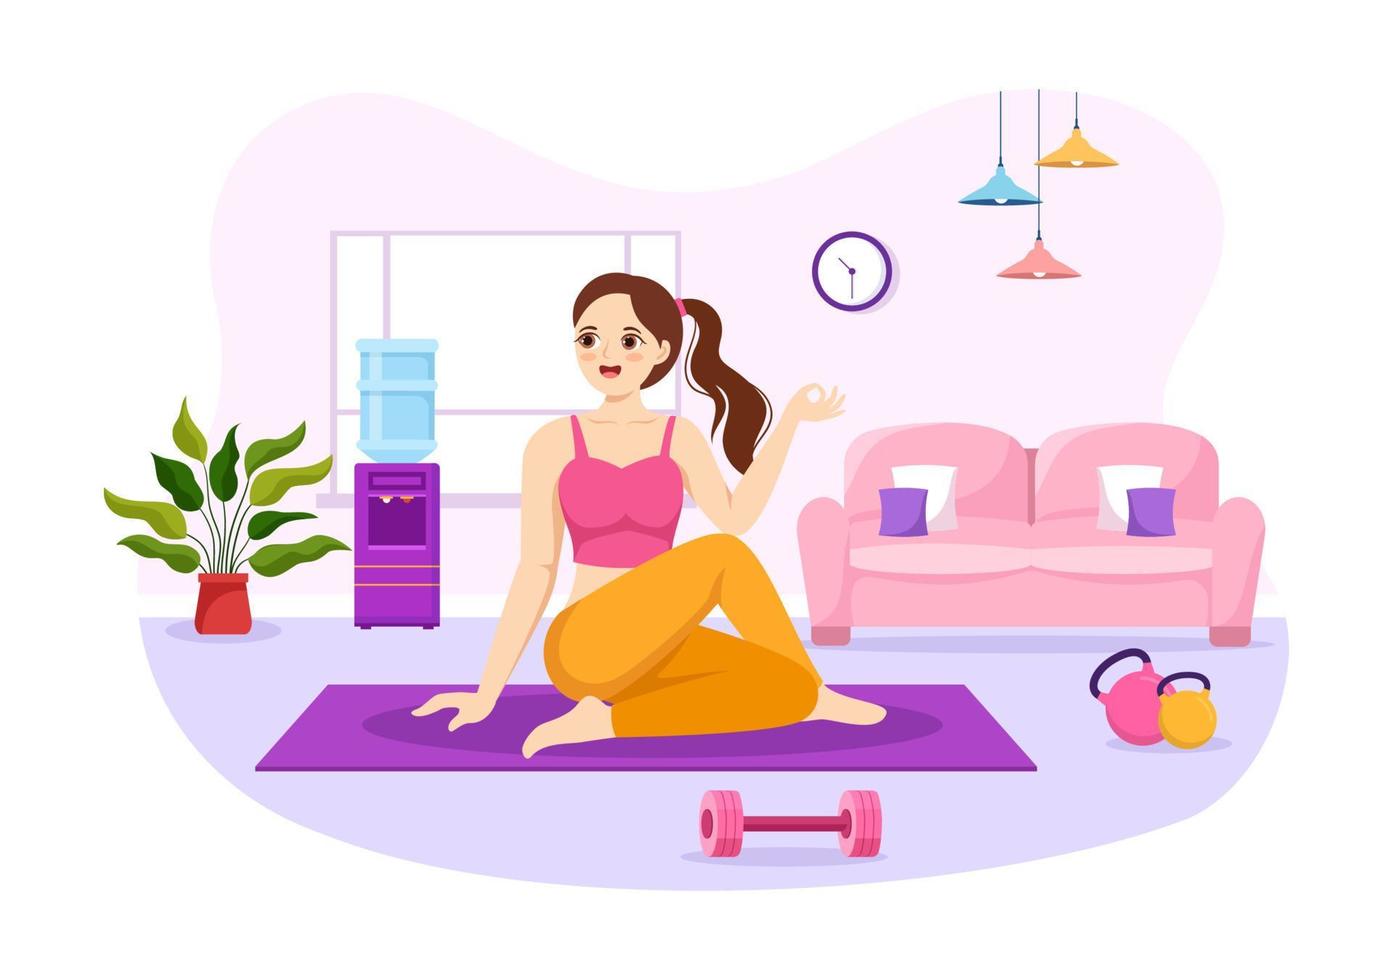 yoga- und meditationspraxisillustration mit gesundheitsvorteilen des körpers für webbanner oder zielseite in flachen handgezeichneten karikaturvorlagen vektor